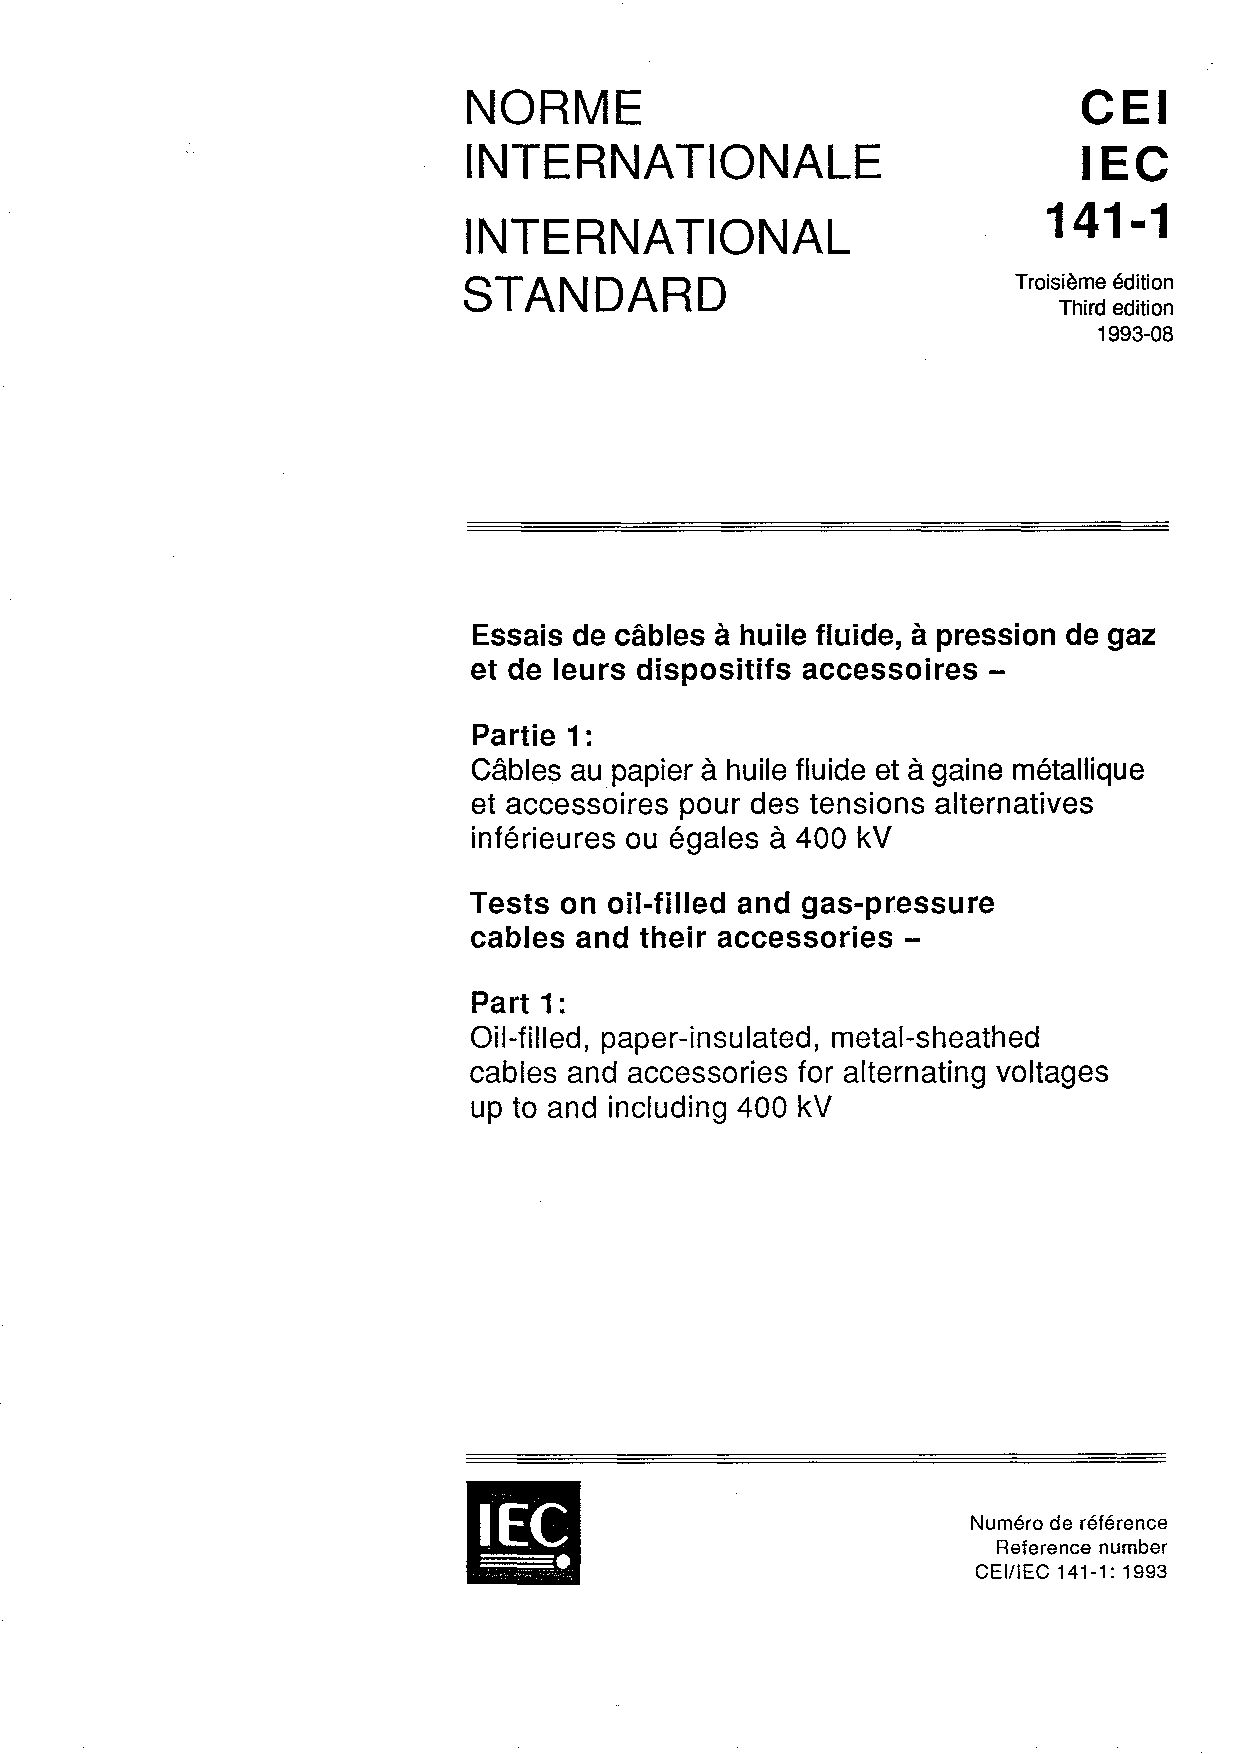 IEC 60141-1:1993